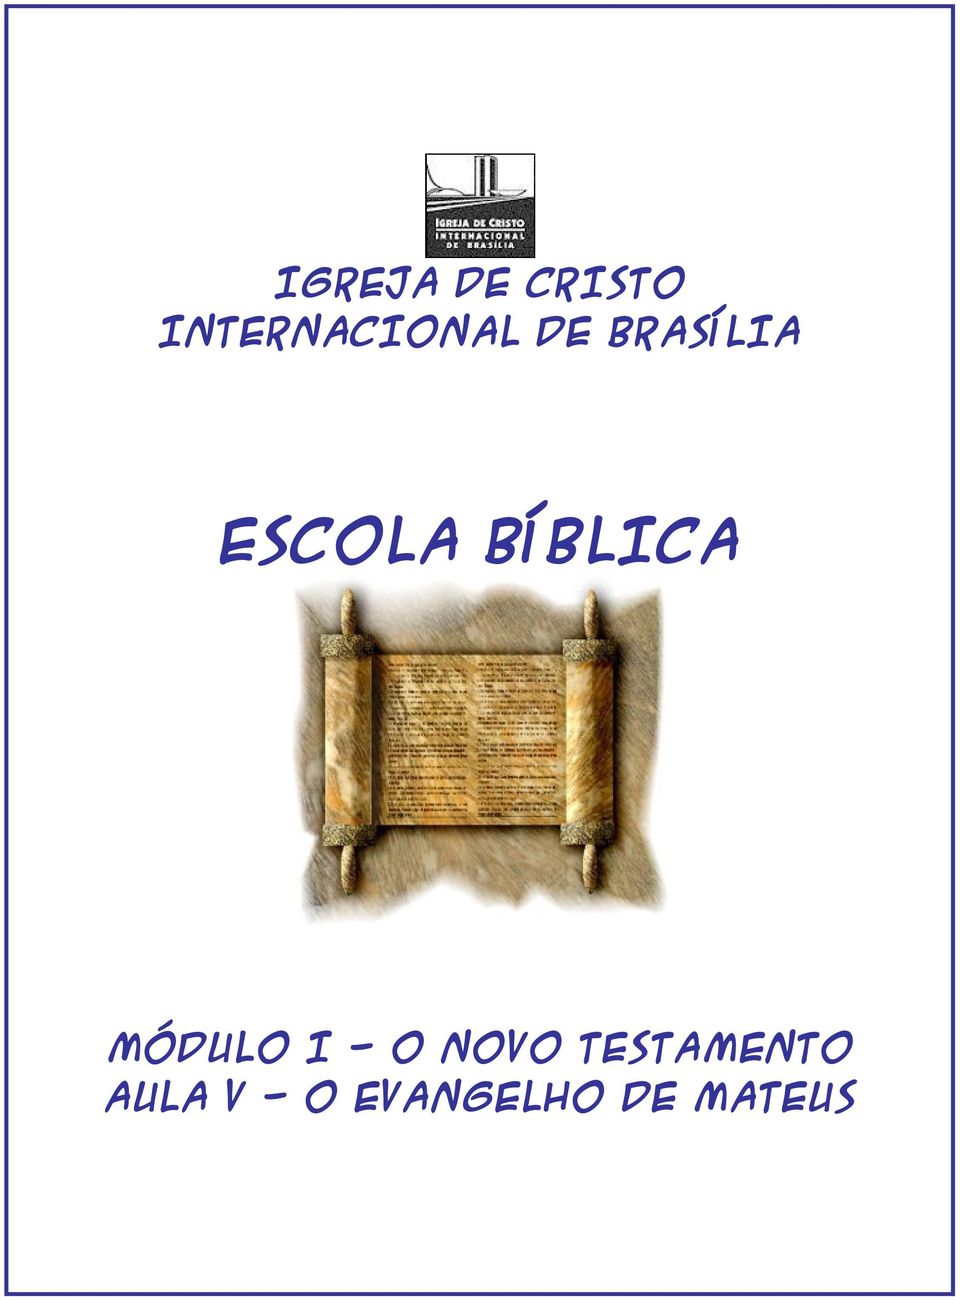 ESCOLA BÍBLICA MÓDULO I - O